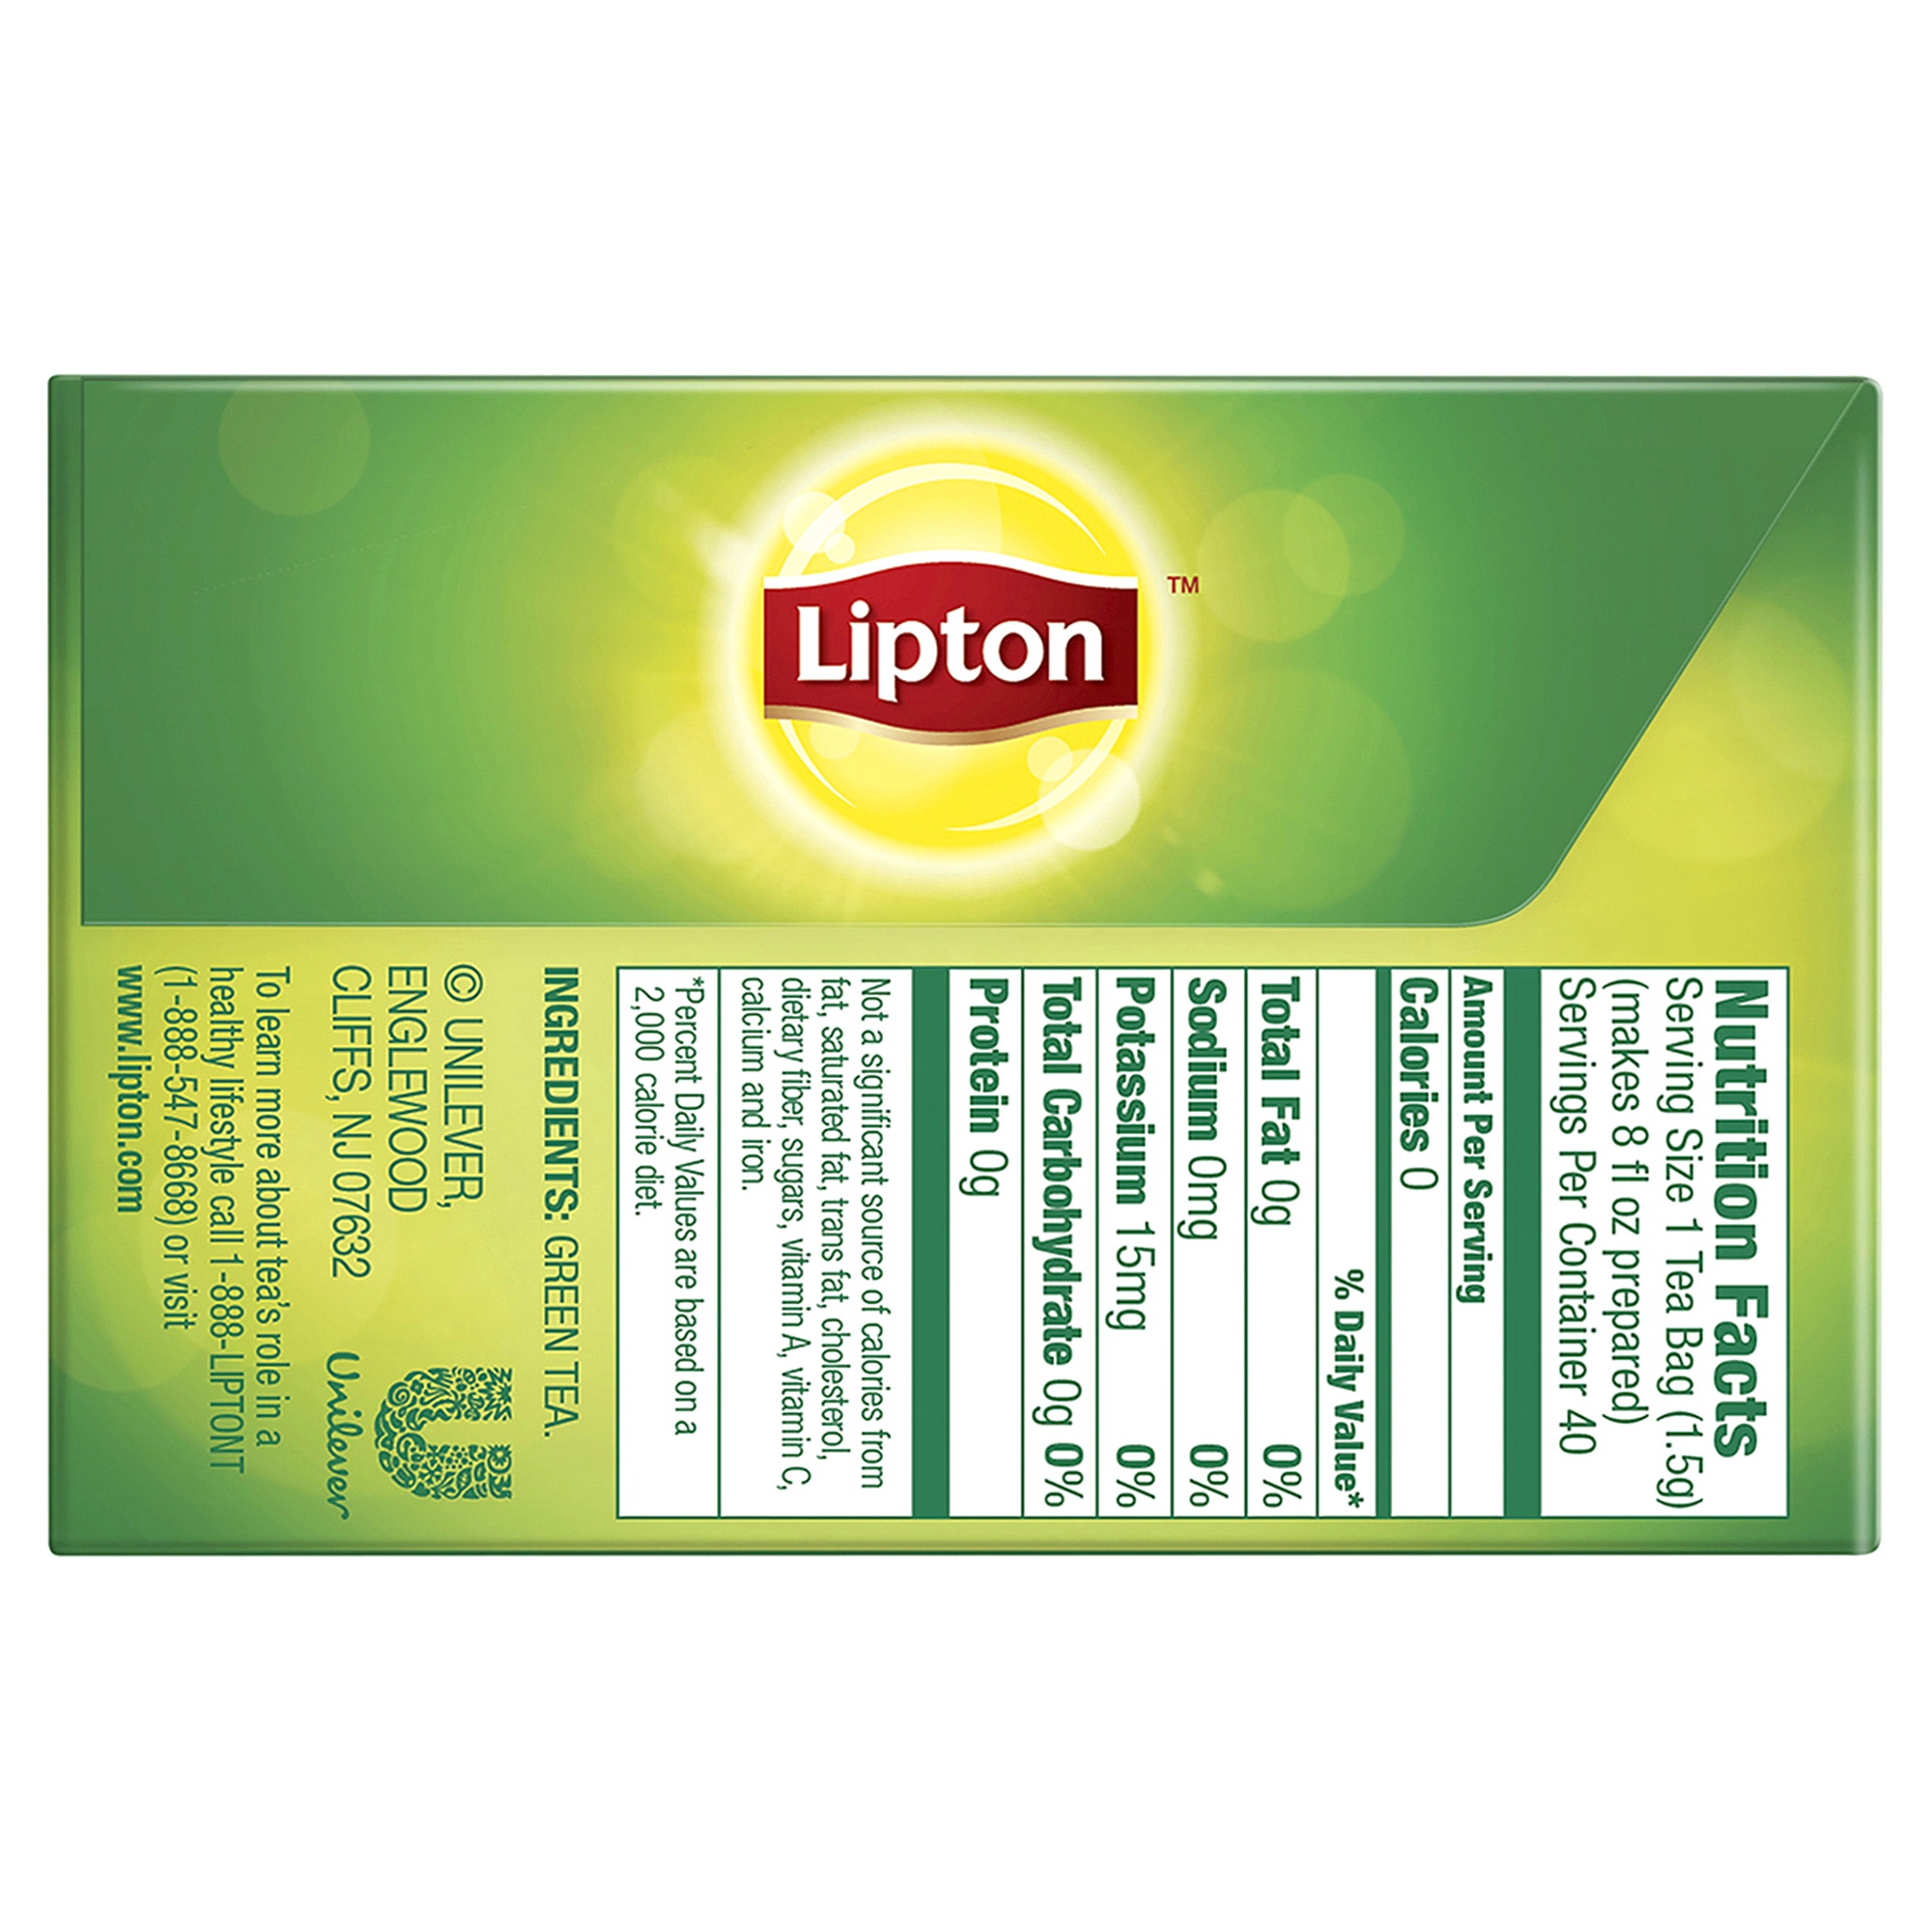 Состав чая липтон. Холодный зеленый чай Липтон этикетка. Липтон зеленый чай состав. Липтон зелёный холодный чай состав. Lipton Tea Nutrition facts.